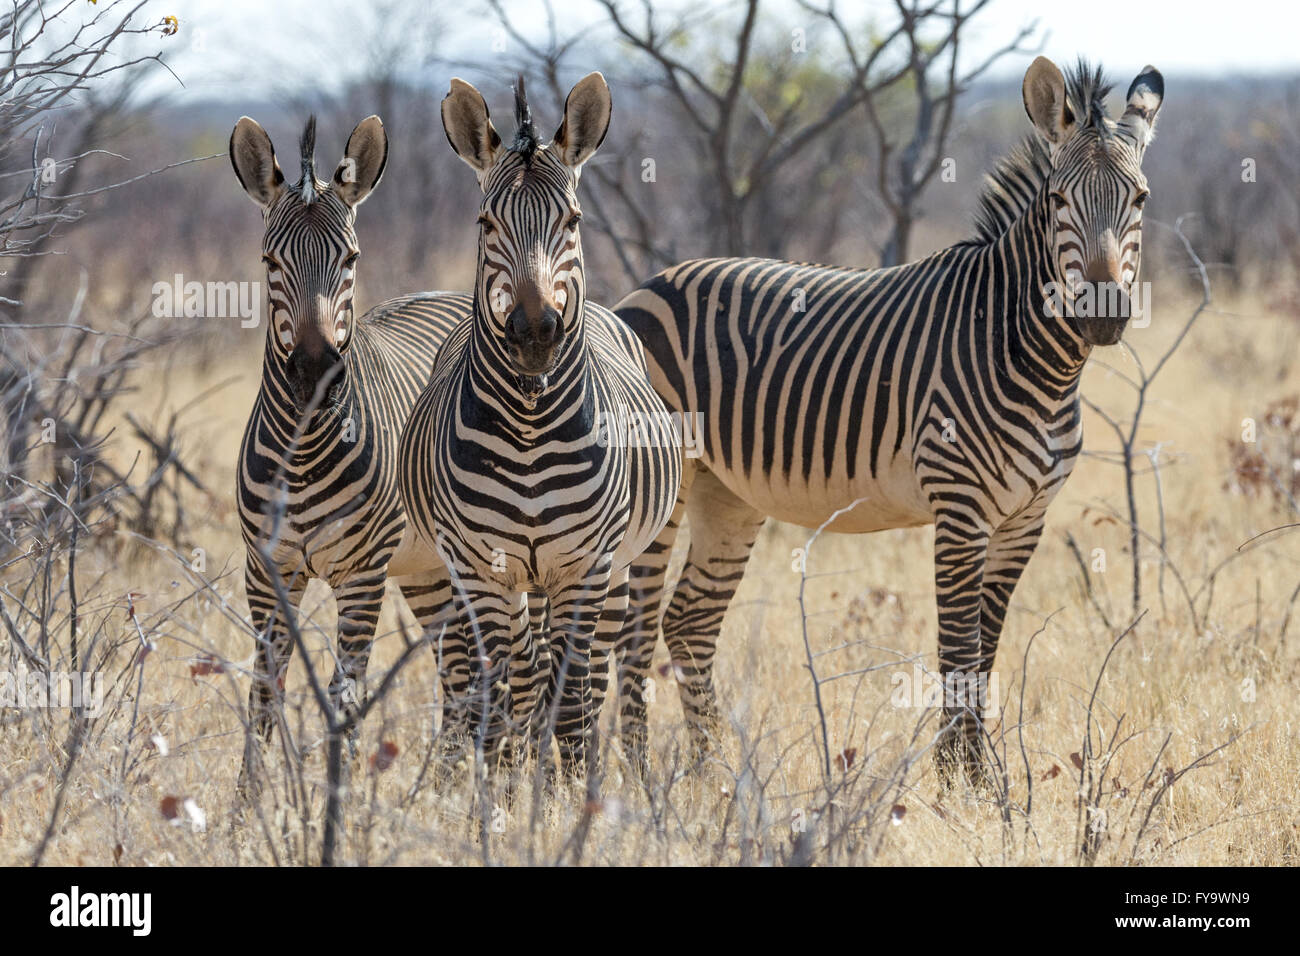 Hartmann's Mountain Zebra, Parque Nacional Etosha, Namibia Foto de stock